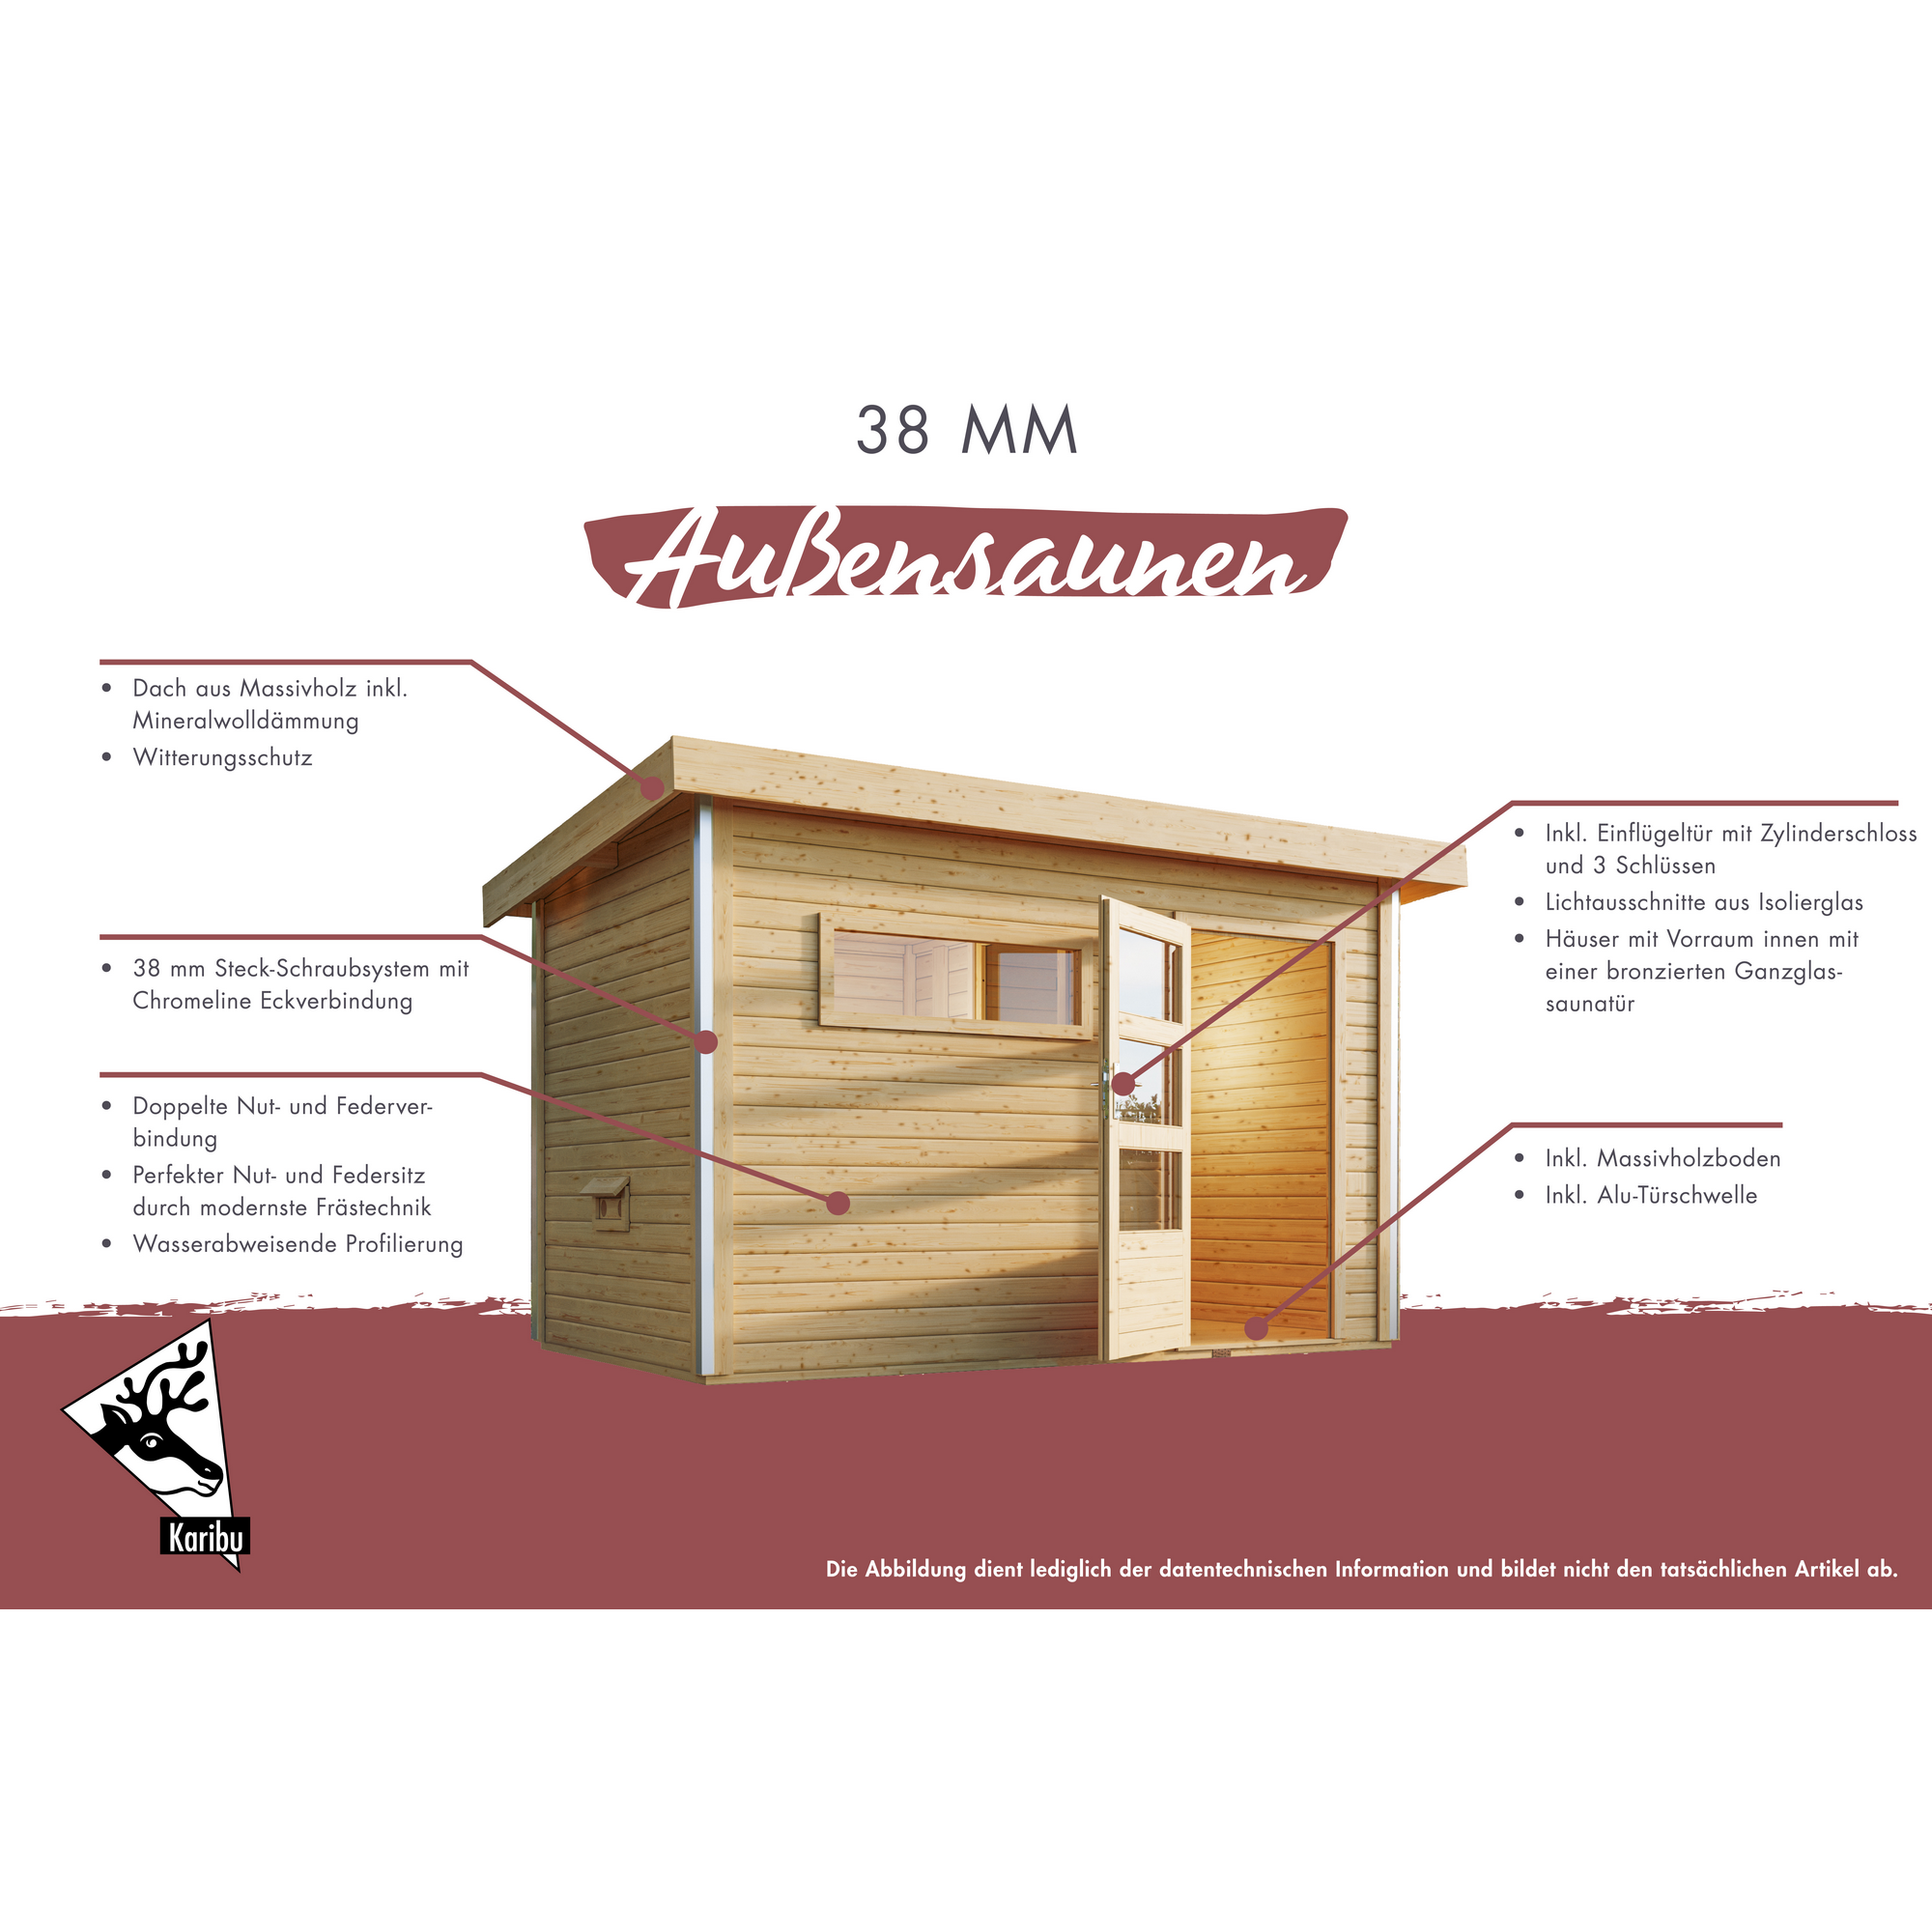 Gartenhaus mit Sauna 'Enrique 1 Variante B' naturbelassen 9 kW Bio-Ofen externe Steuerung 308 x 308 x 242 cm + product picture